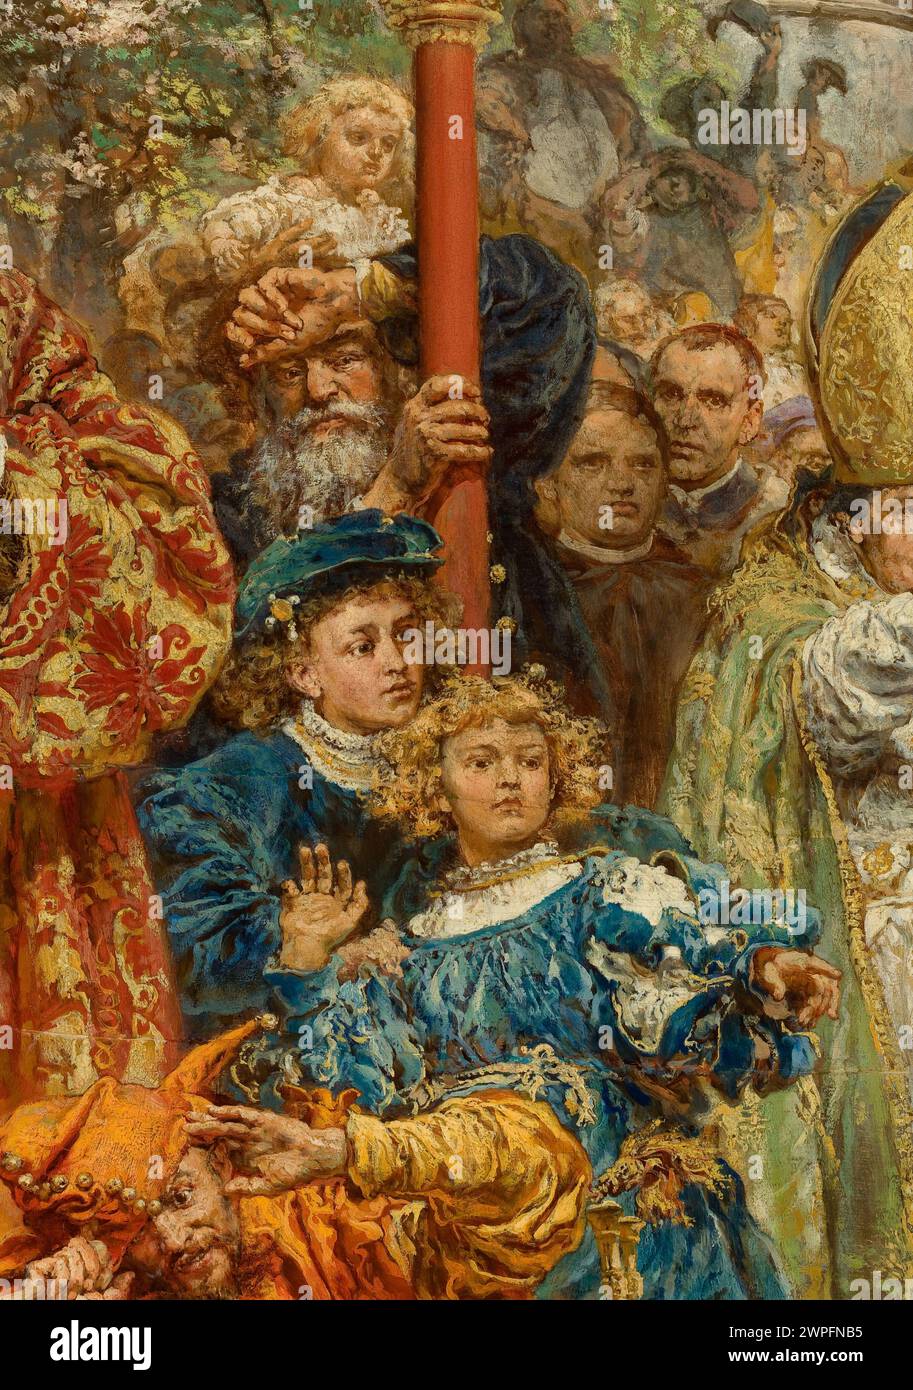 Suspension de la cloche de Zygmunt à la cathédrale de Cracovie en 1521 ; Matejko, Jan (1838-1893); 1874 (1874-00-00-1874-00-00);Bona Sforza d'Aragon (Reine de Pologne - 1494-1557), Bona Sforza d'Aragon (Reine de Pologne - 1494-1557) - iconographie, Kraków (Voïvodie de petite Pologne), Wawel (Kraków), Zygmunt i Stary (Roi de Pologne - 1467 -1548), Zygmunt i Stary (Roi de Pologne - 1467-1548) - iconographie Banque D'Images